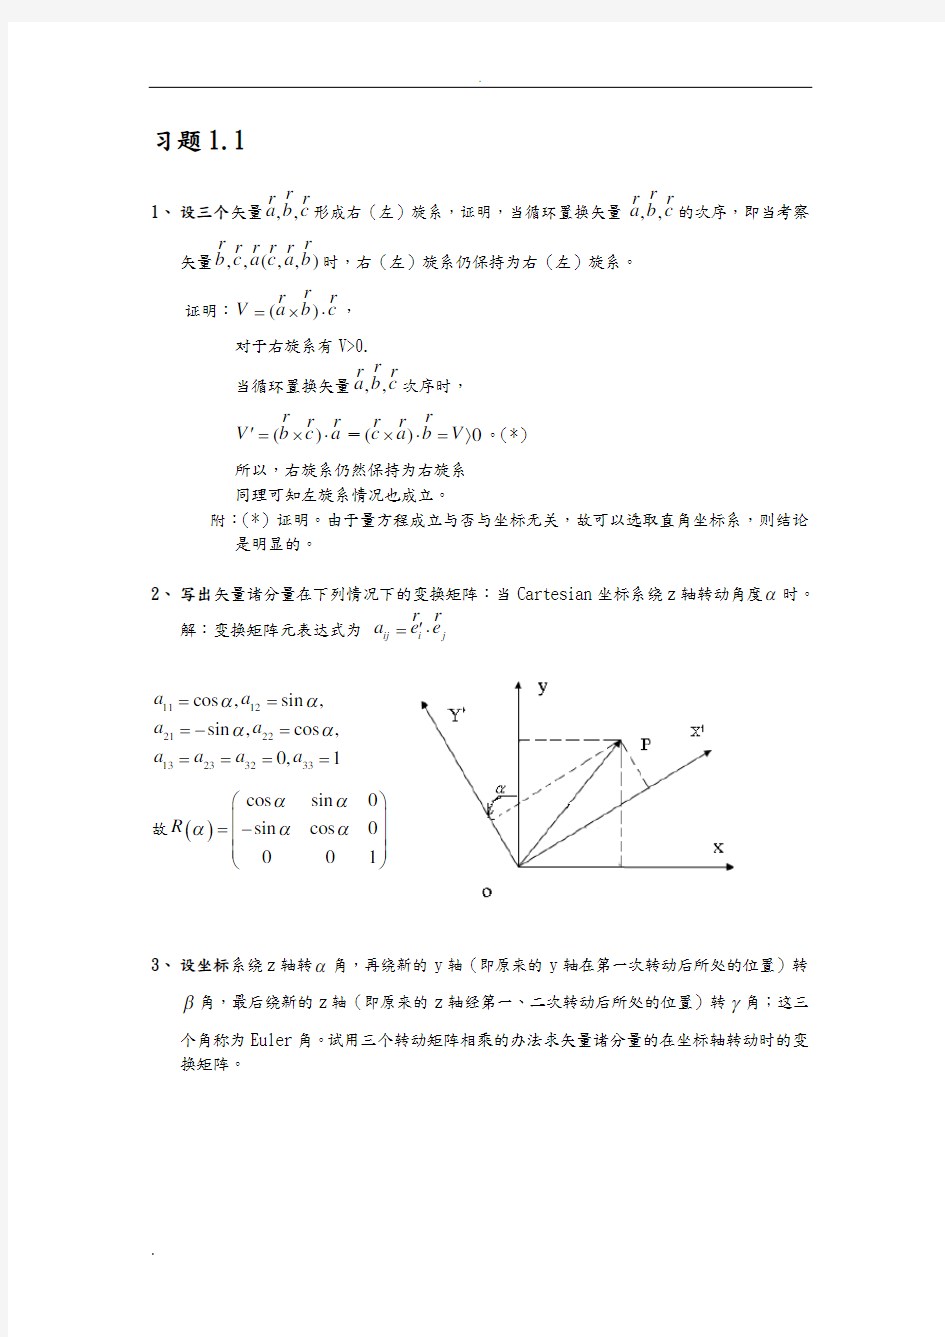 【全】刘觉平电动力学课后习题答案